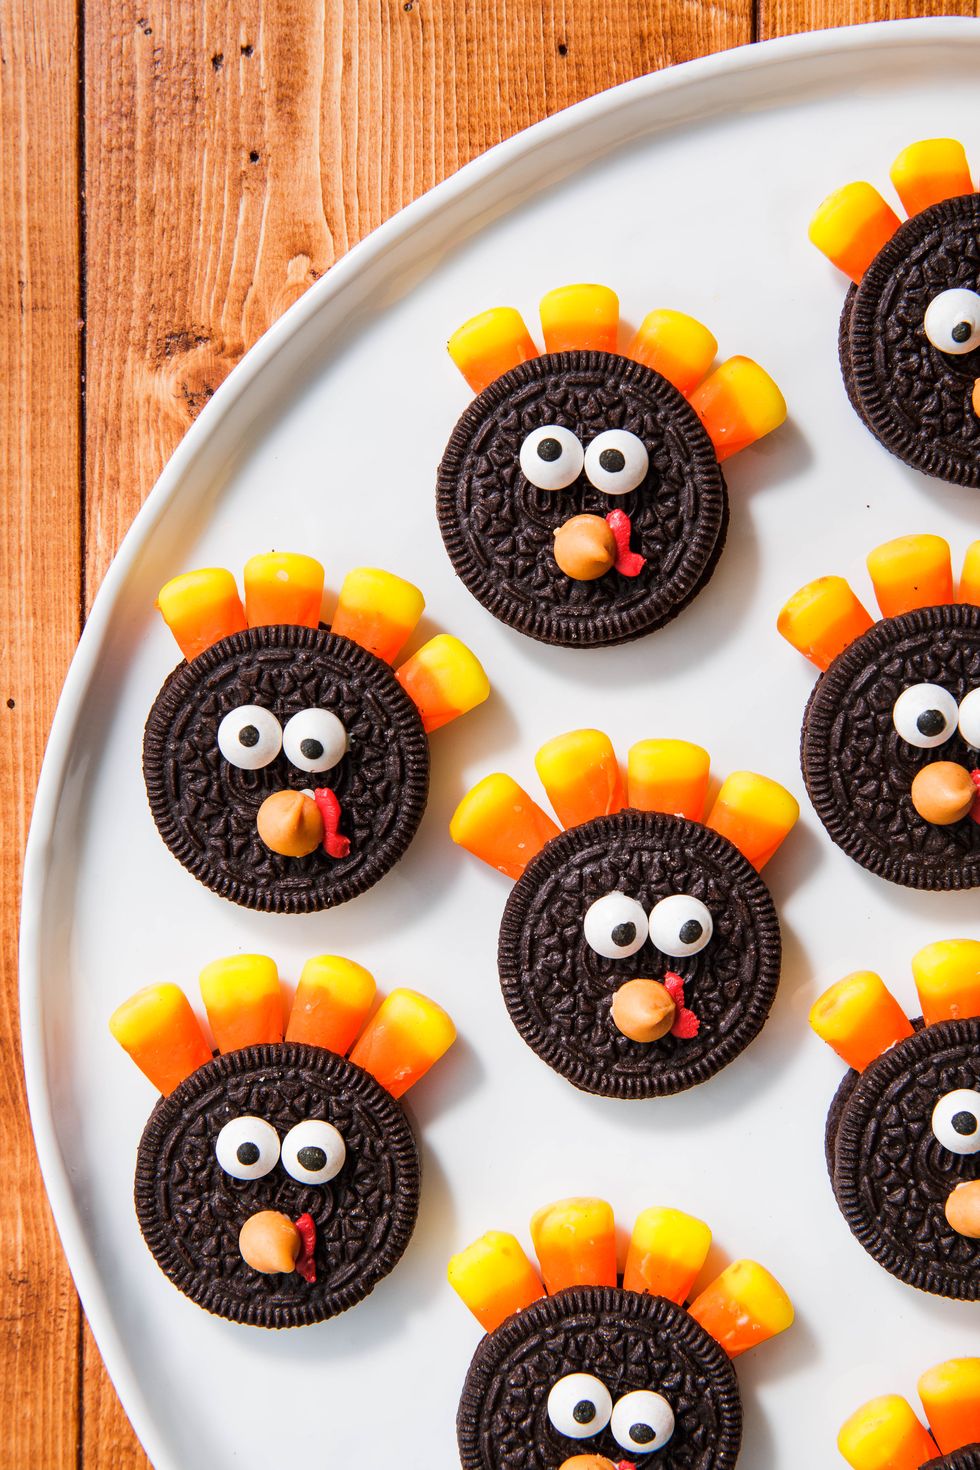 10+ Oreo Turkey Recipes - How To Make Oreo Cookie Turkeys for ...